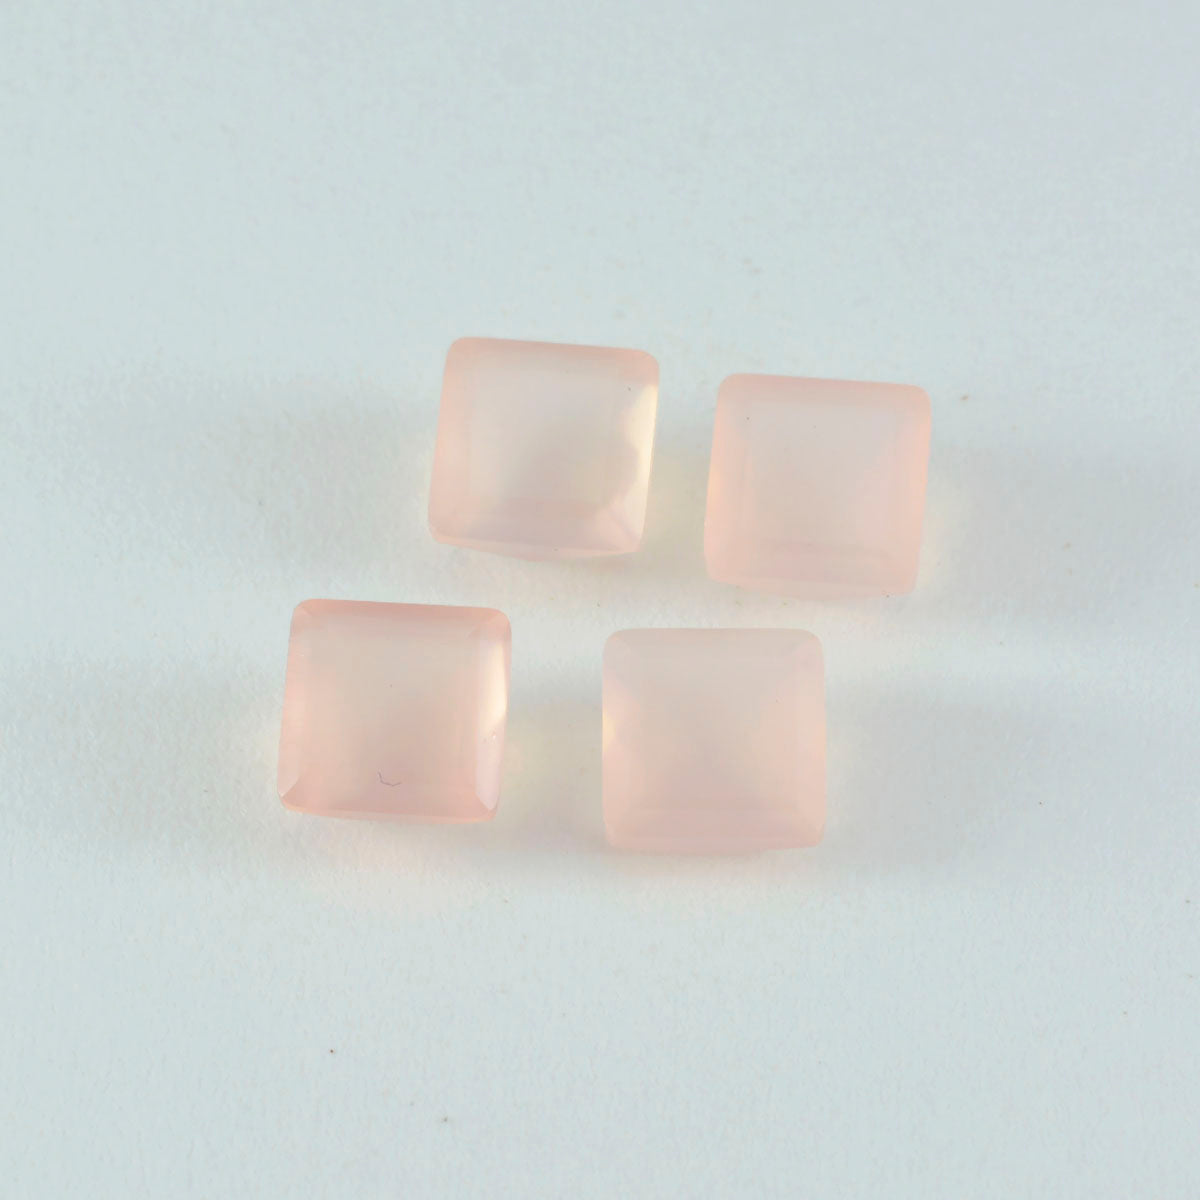 Riyogems 1PC roze rozenkwarts gefacetteerd 15x15 mm vierkante vorm schoonheid kwaliteit edelstenen